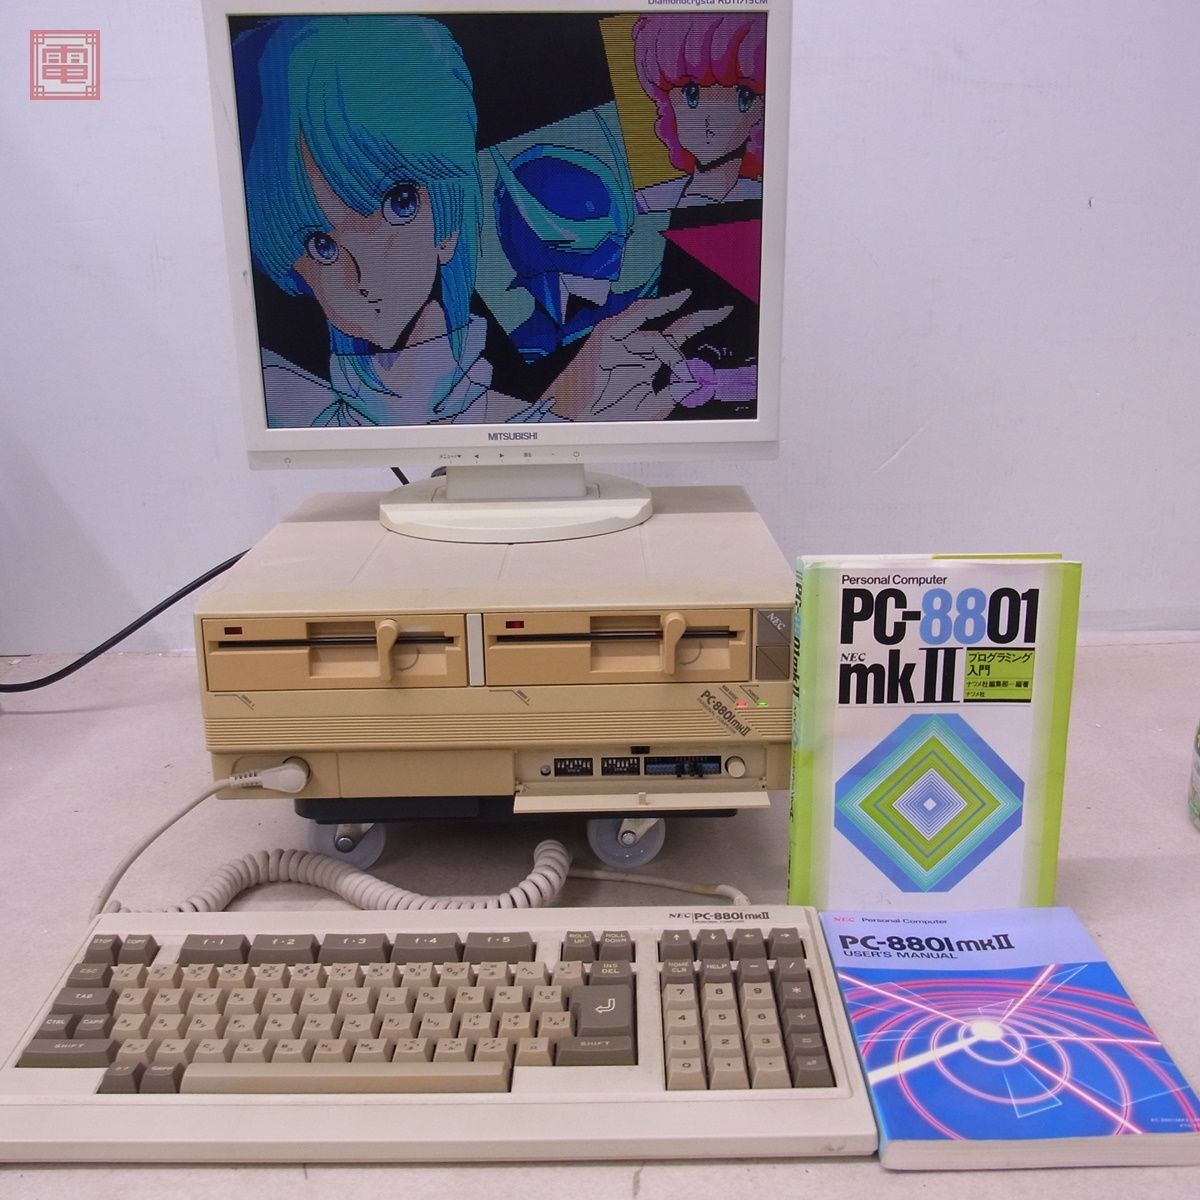  рабочий товар NEC PC-8801mkII корпус клавиатура * руководство пользователя * в подарок литература MKII Япония электрический с дефектом [40